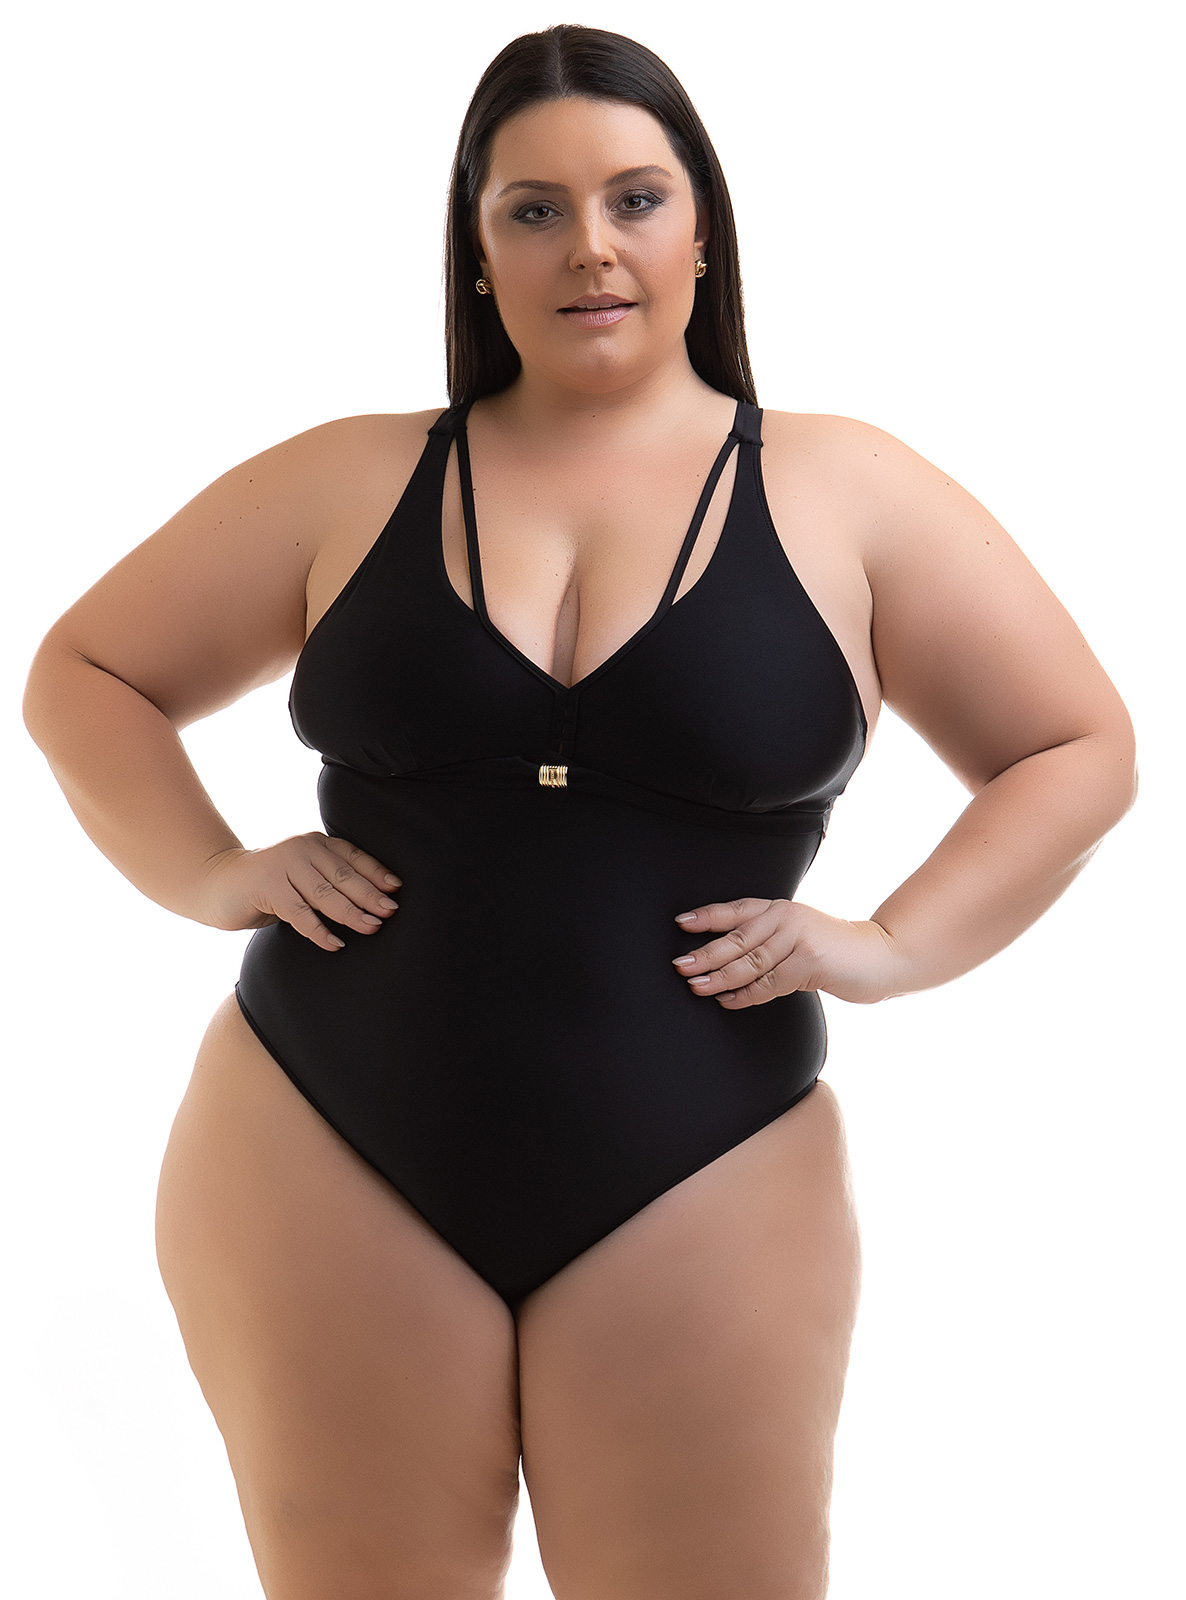 Model Plus Size Swimsuit